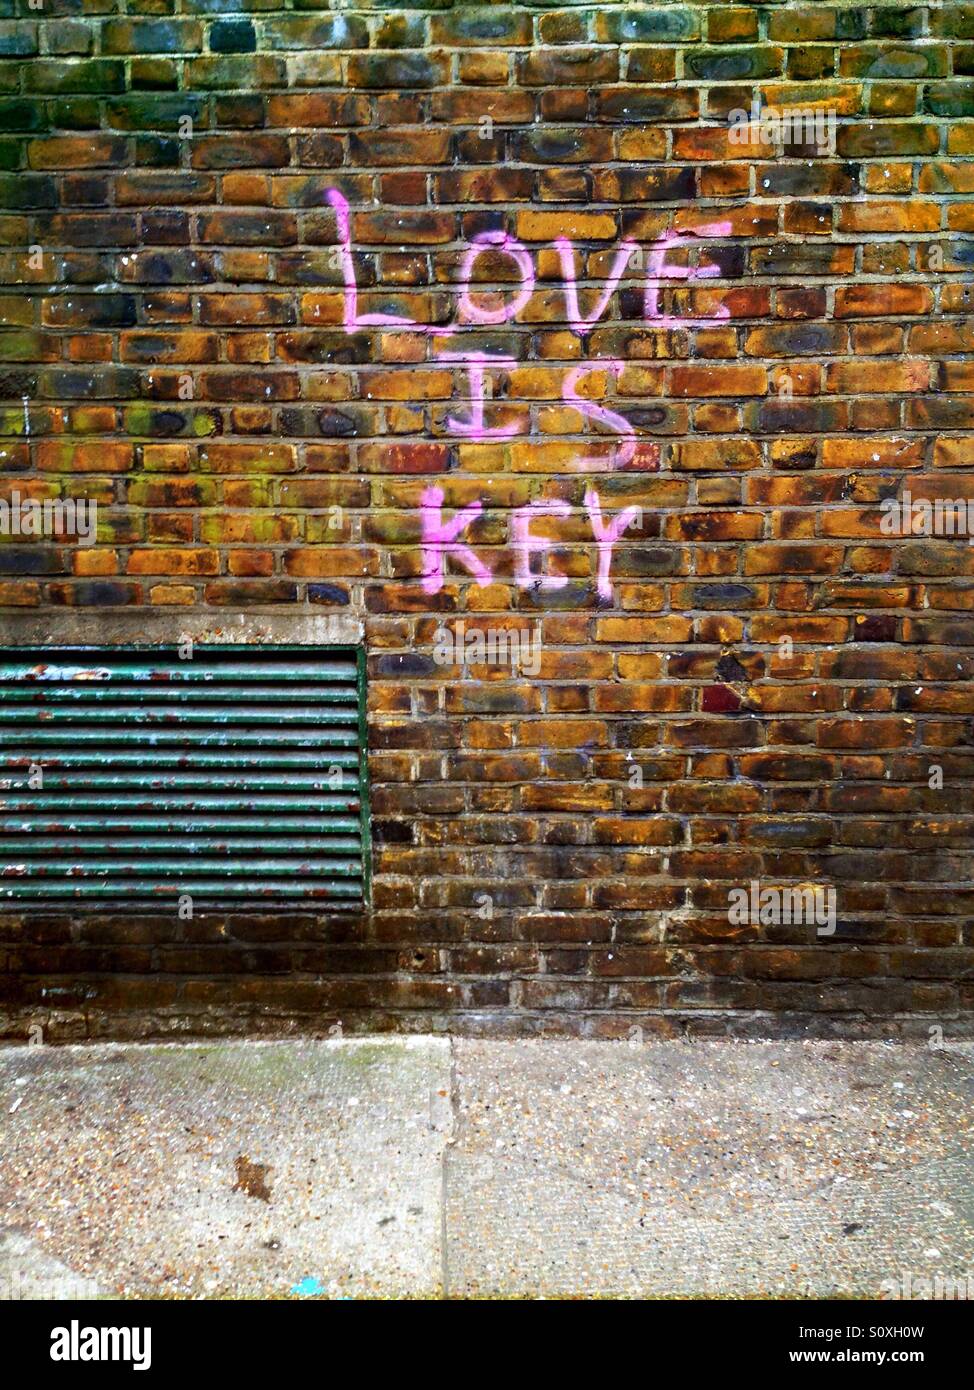 Liebe ist wichtiger Graffiti auf eine Mauer in Shoreditch in der Nähe von Brick Lane, London, England, UK Stockfoto